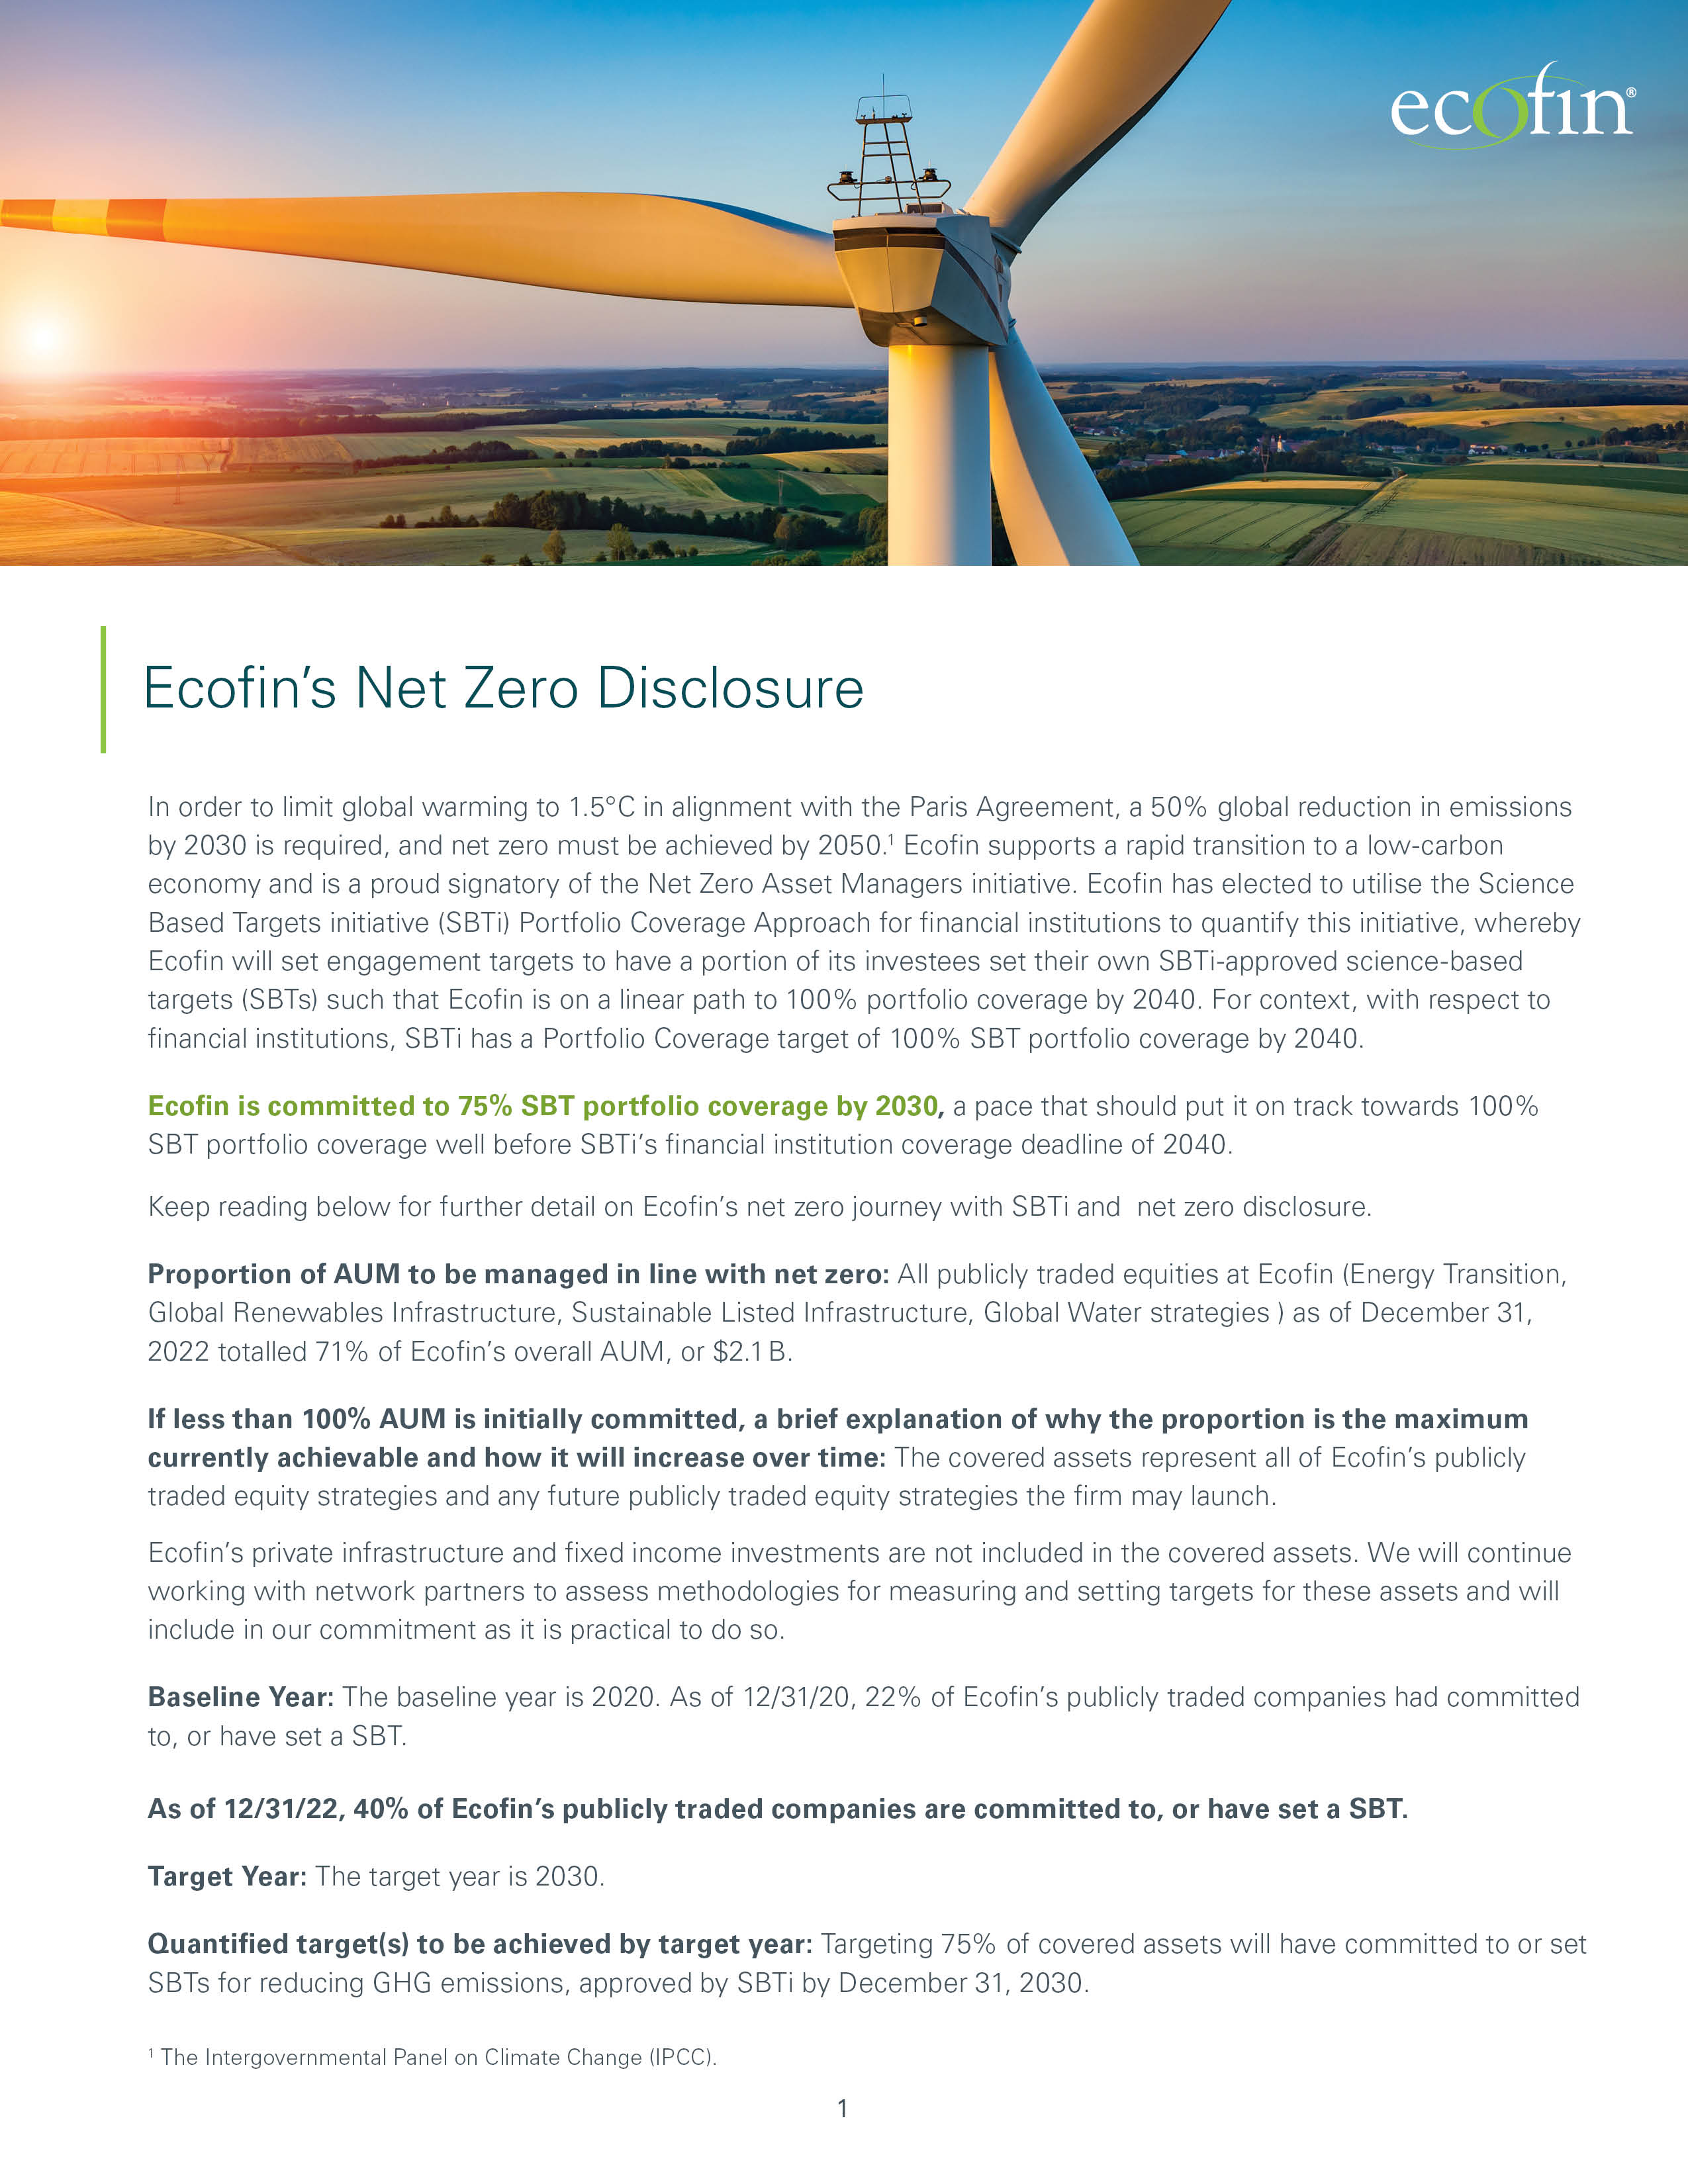 Ecofin’s Net Zero Disclosure